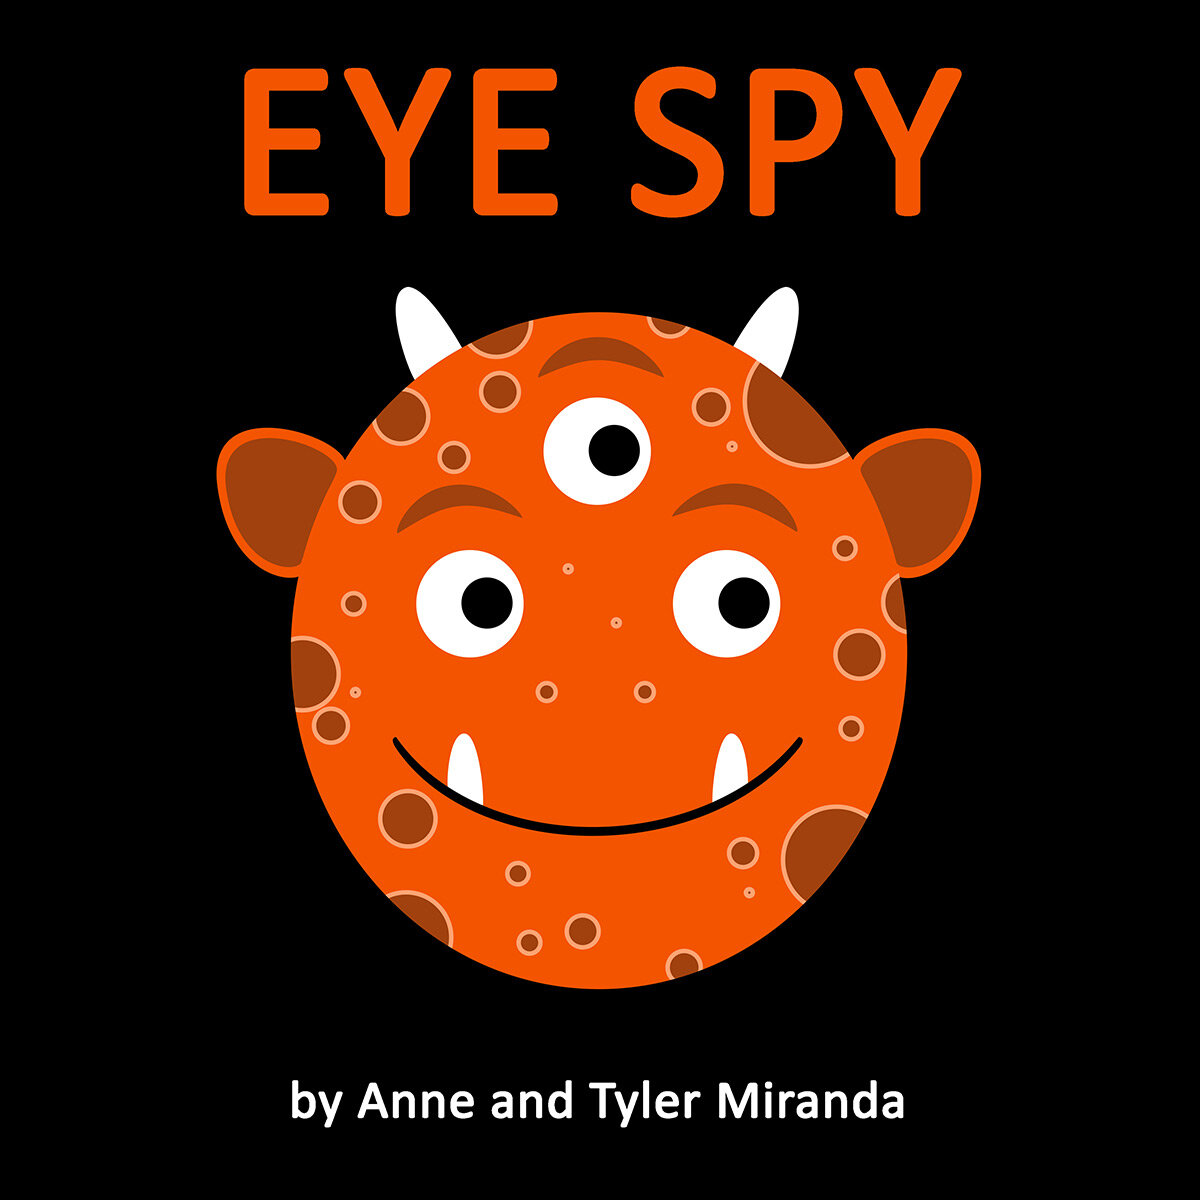 Eye Spy illustrated by Tyler Miranda